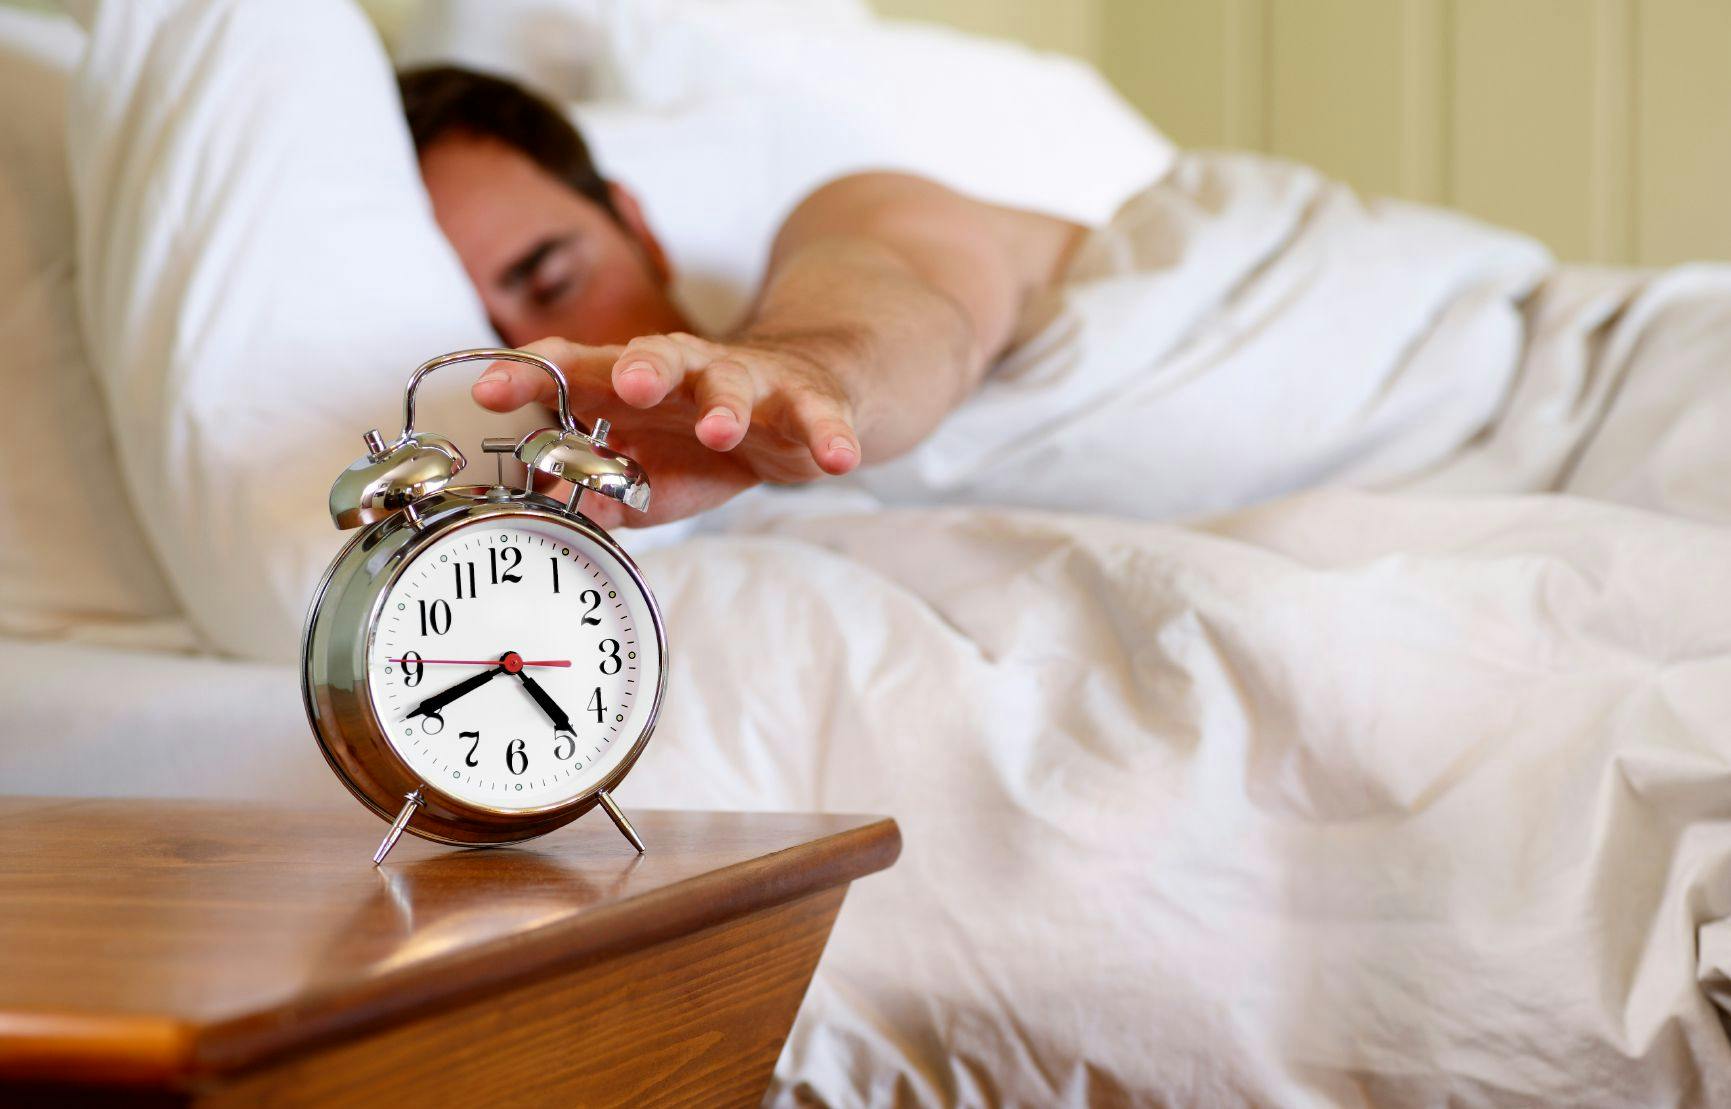 FDA Clears First Daytime Treatment Device for Obstructive Sleep Apnea